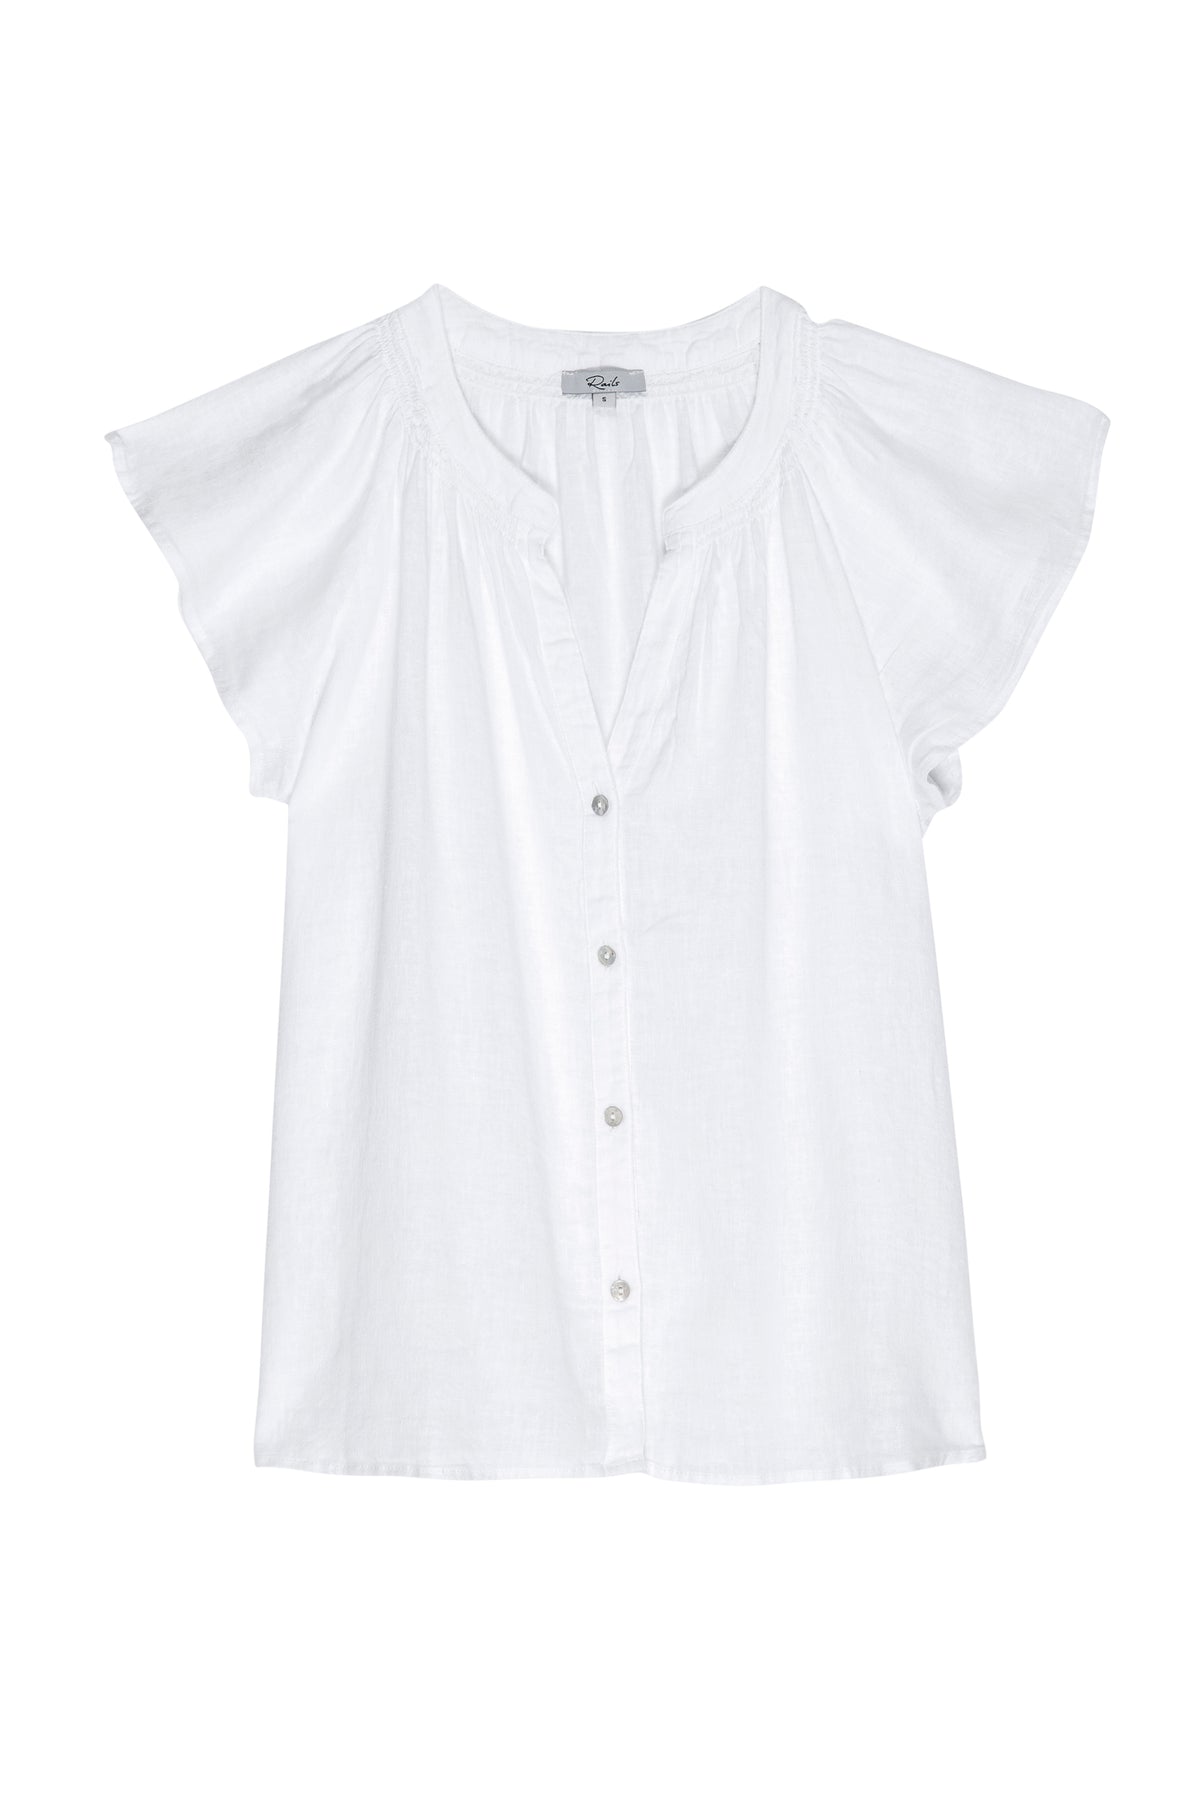 White short sleeve linen button through top